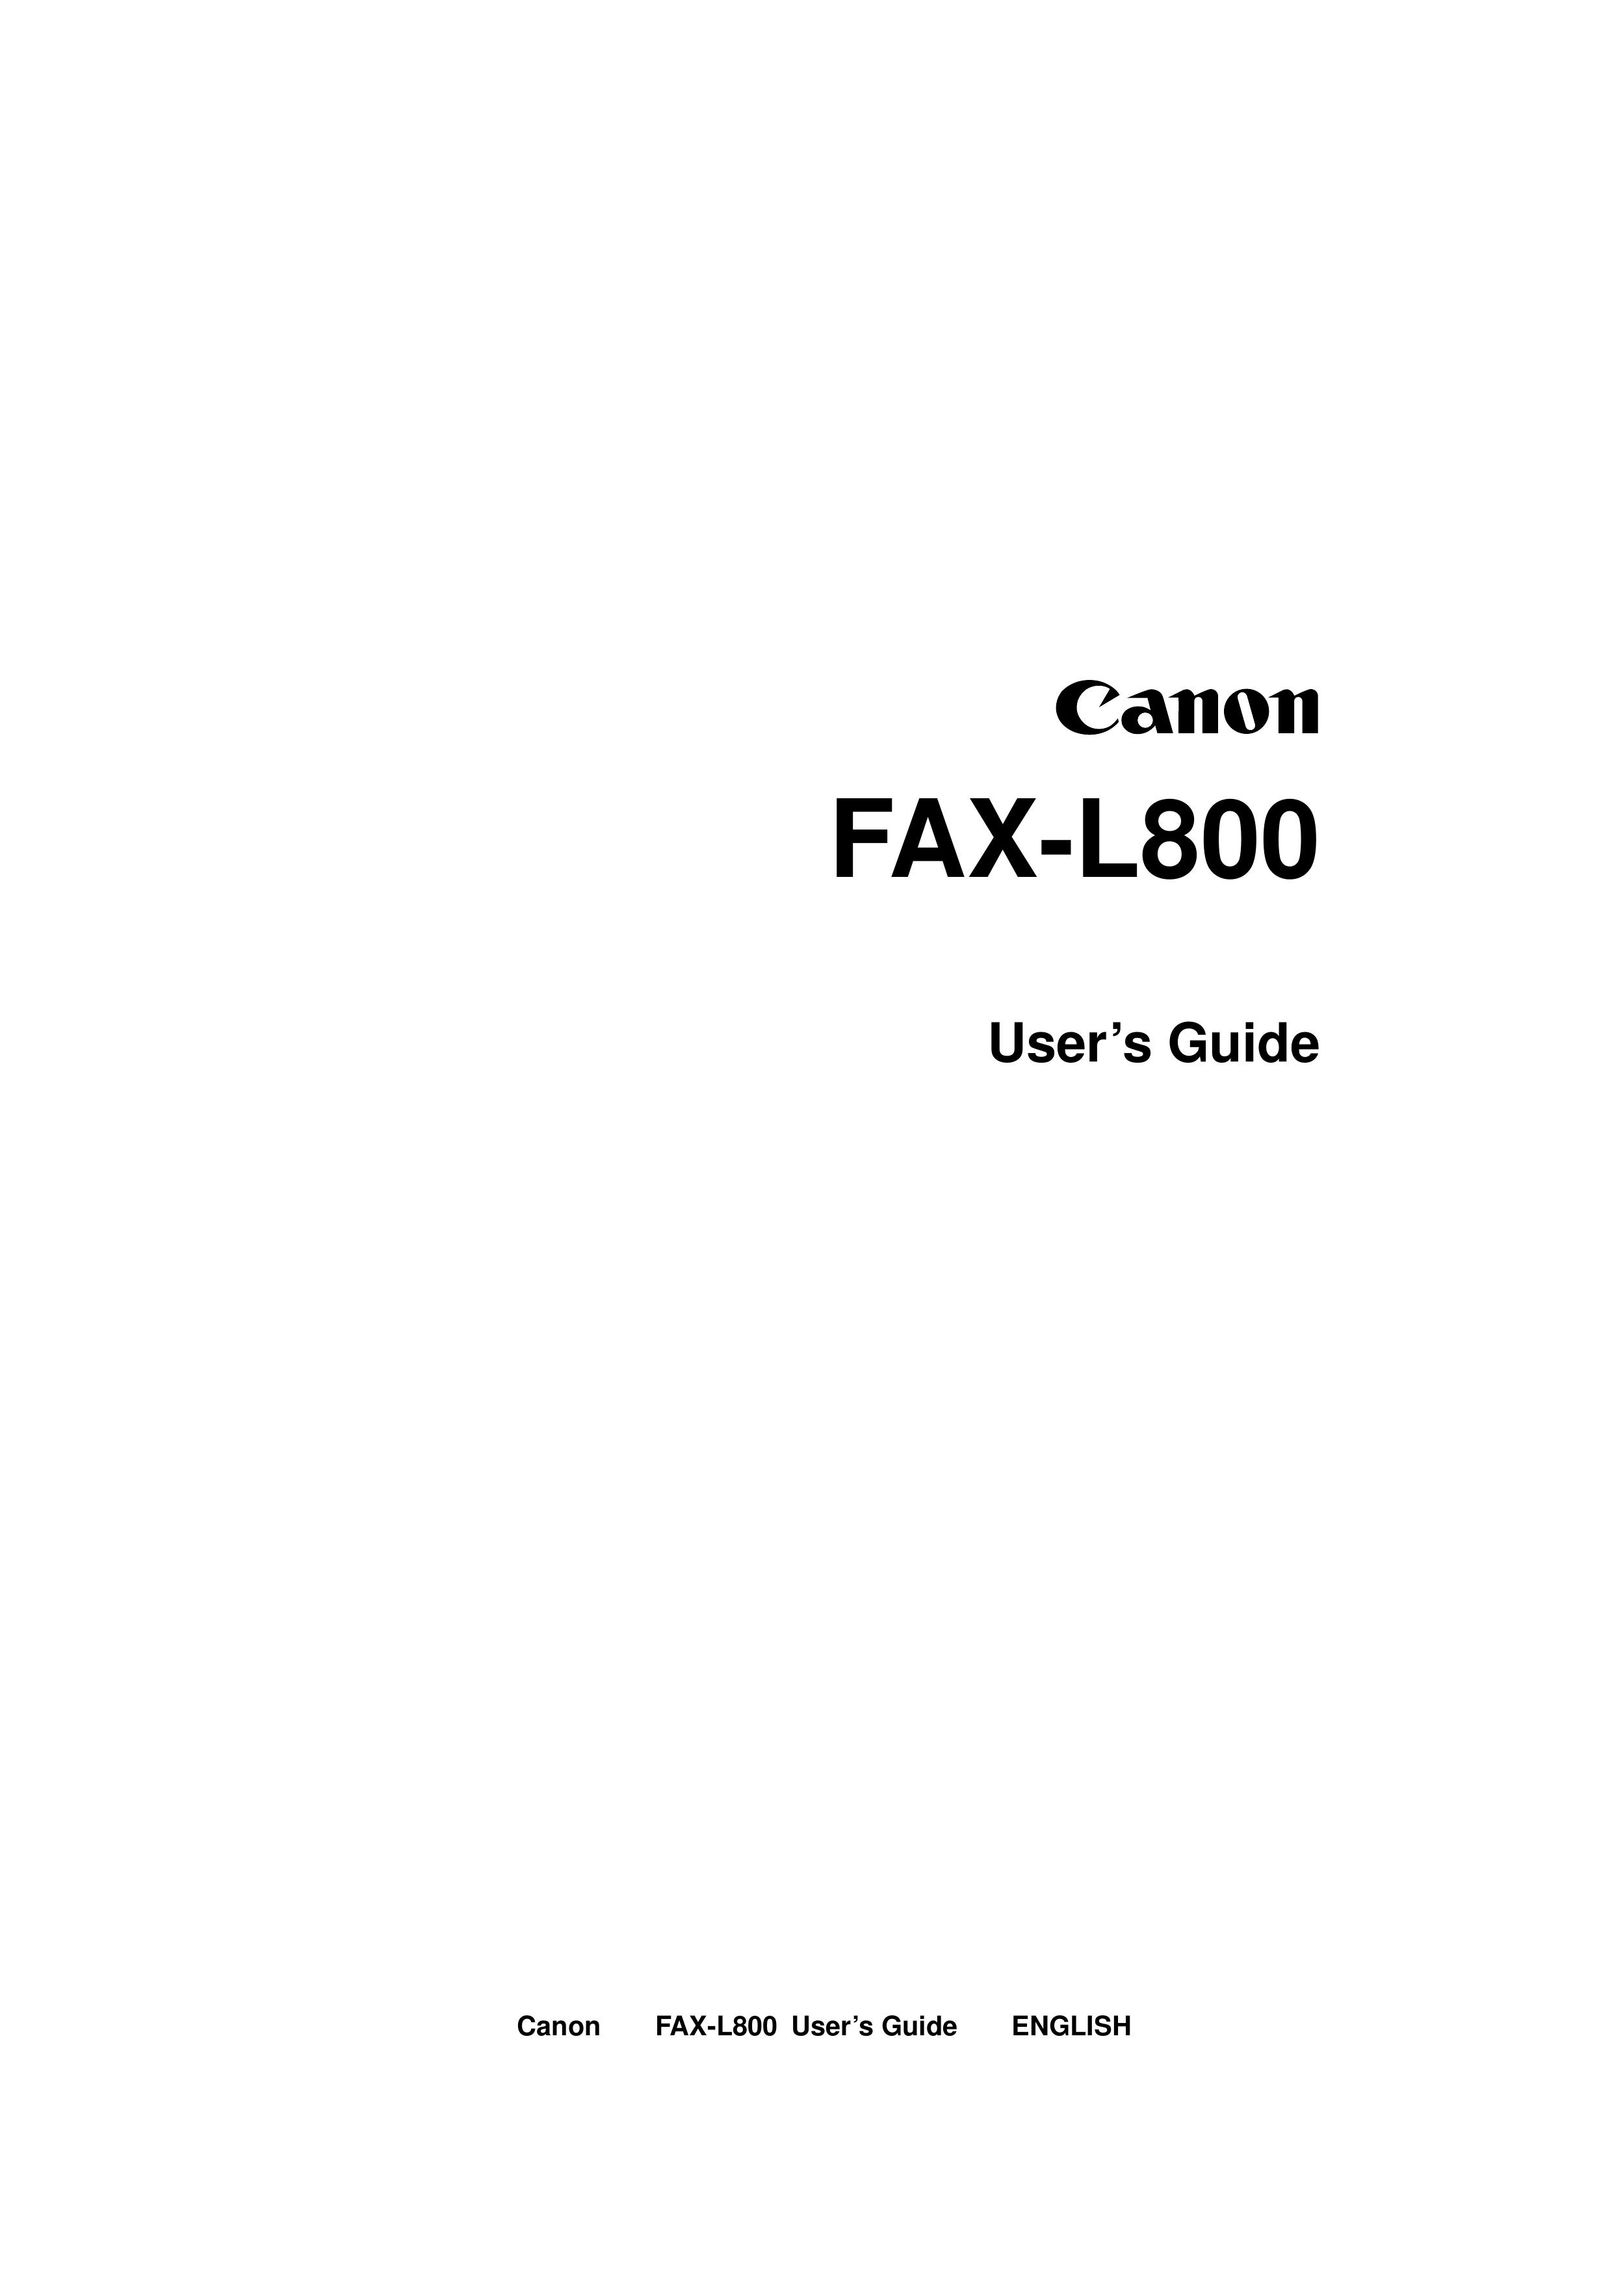 Canon FAX-L800 Fax Machine User Manual